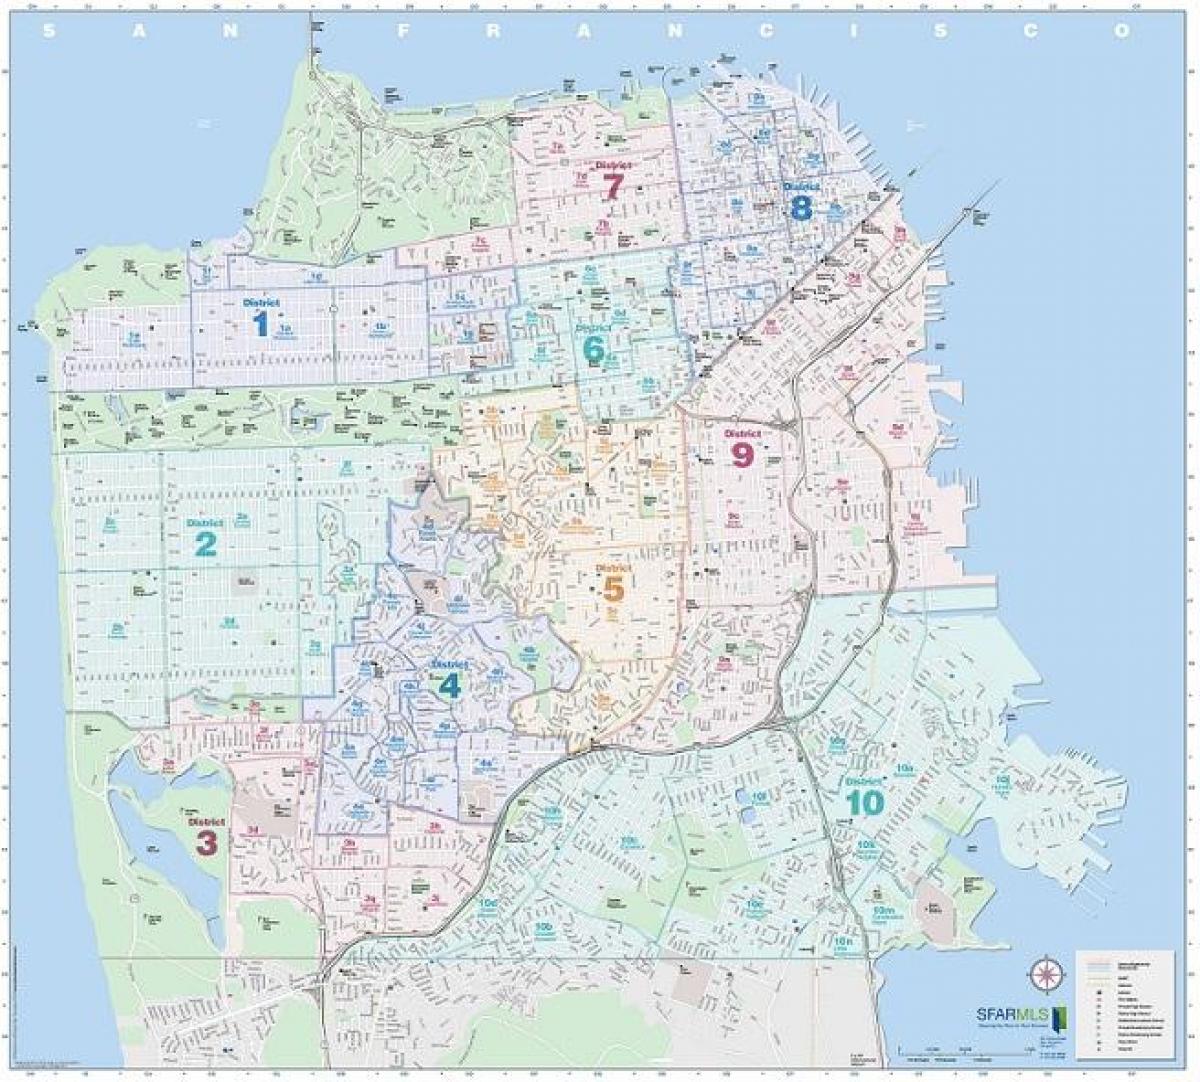 San Francisco mls térkép